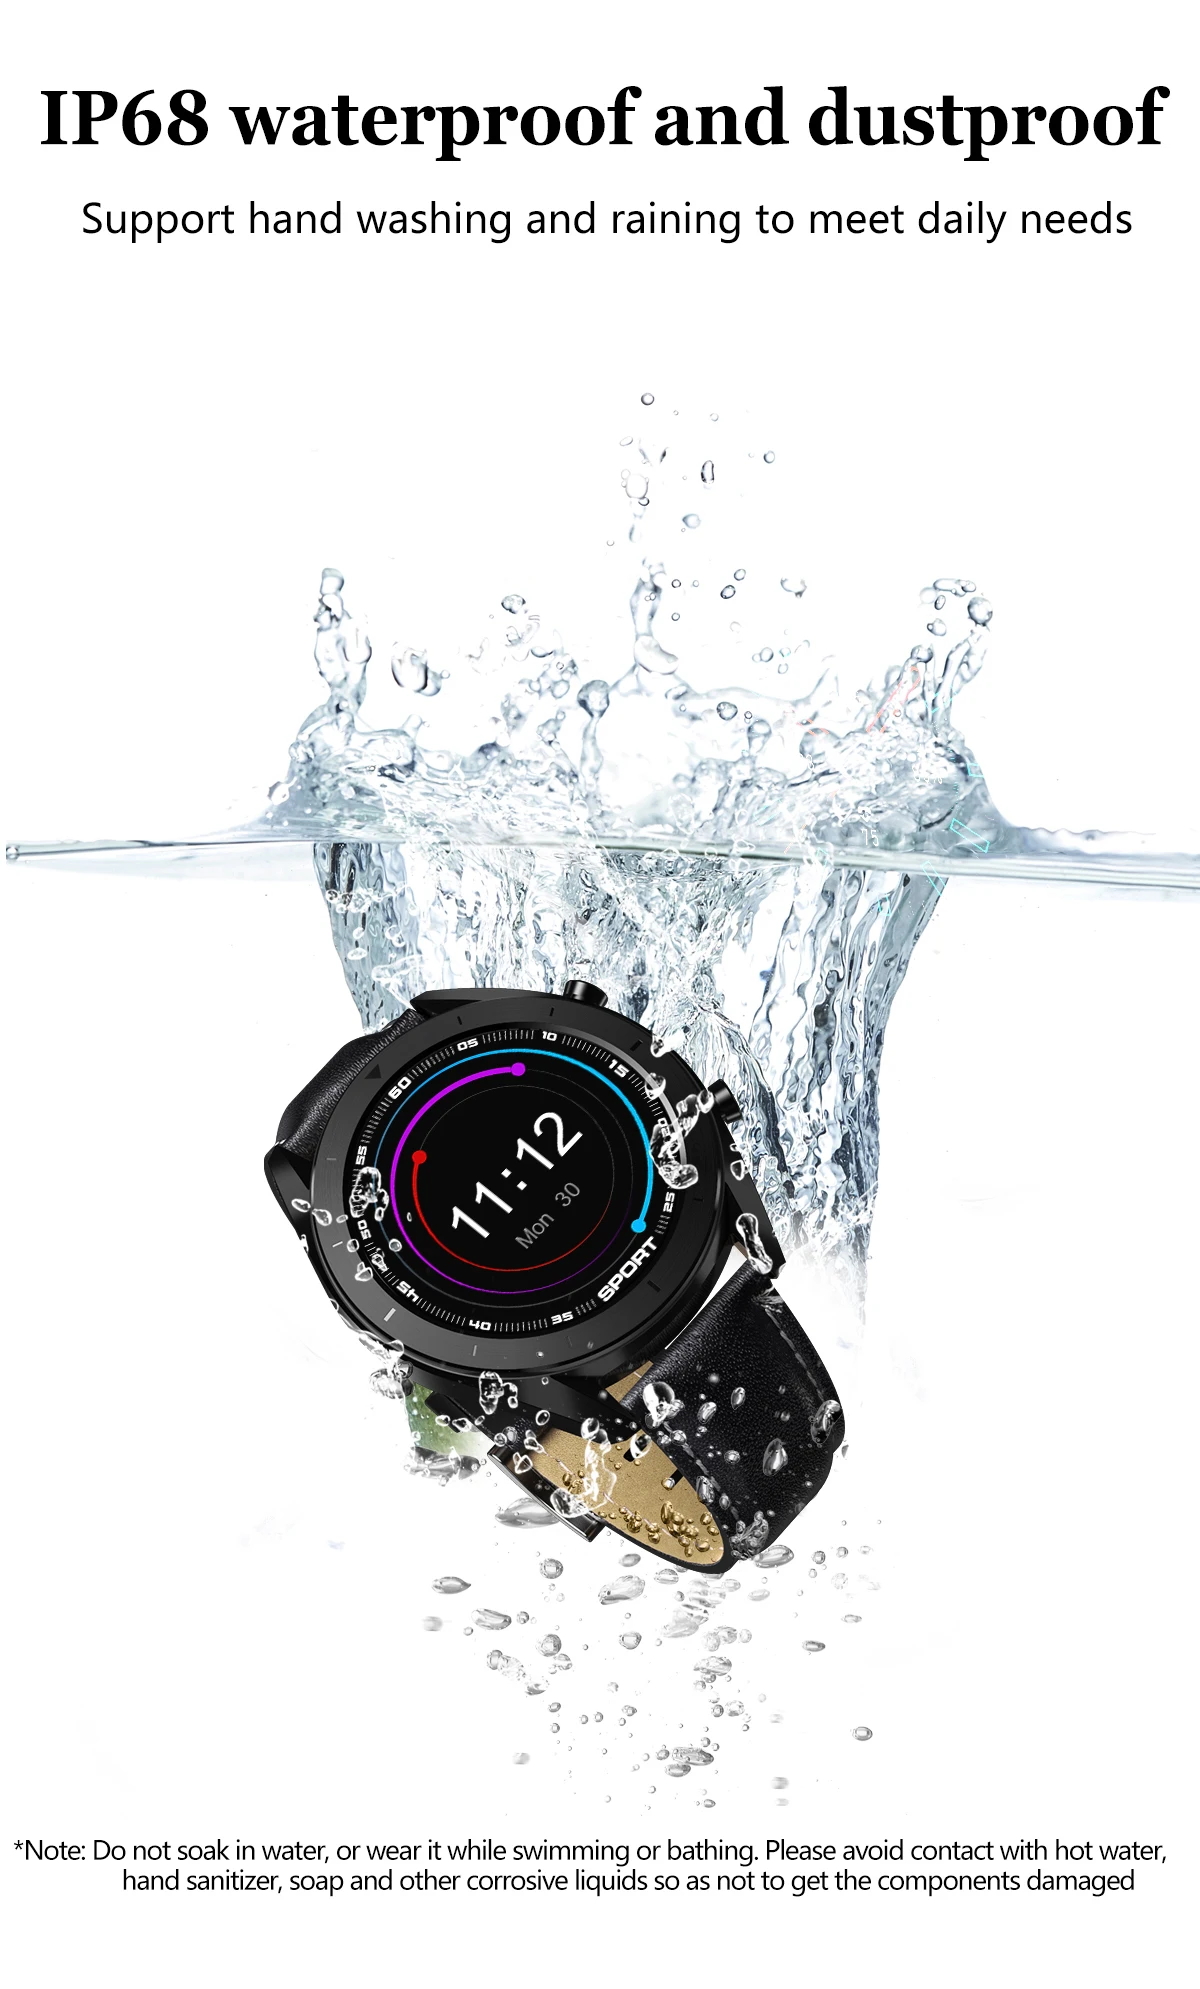 LYKRY DT99 умные часы бизнес мужские спортивные часы IP68 Водонепроницаемые пульсометр мониторинг сна фитнес-трекер для Xiaomi Iphone